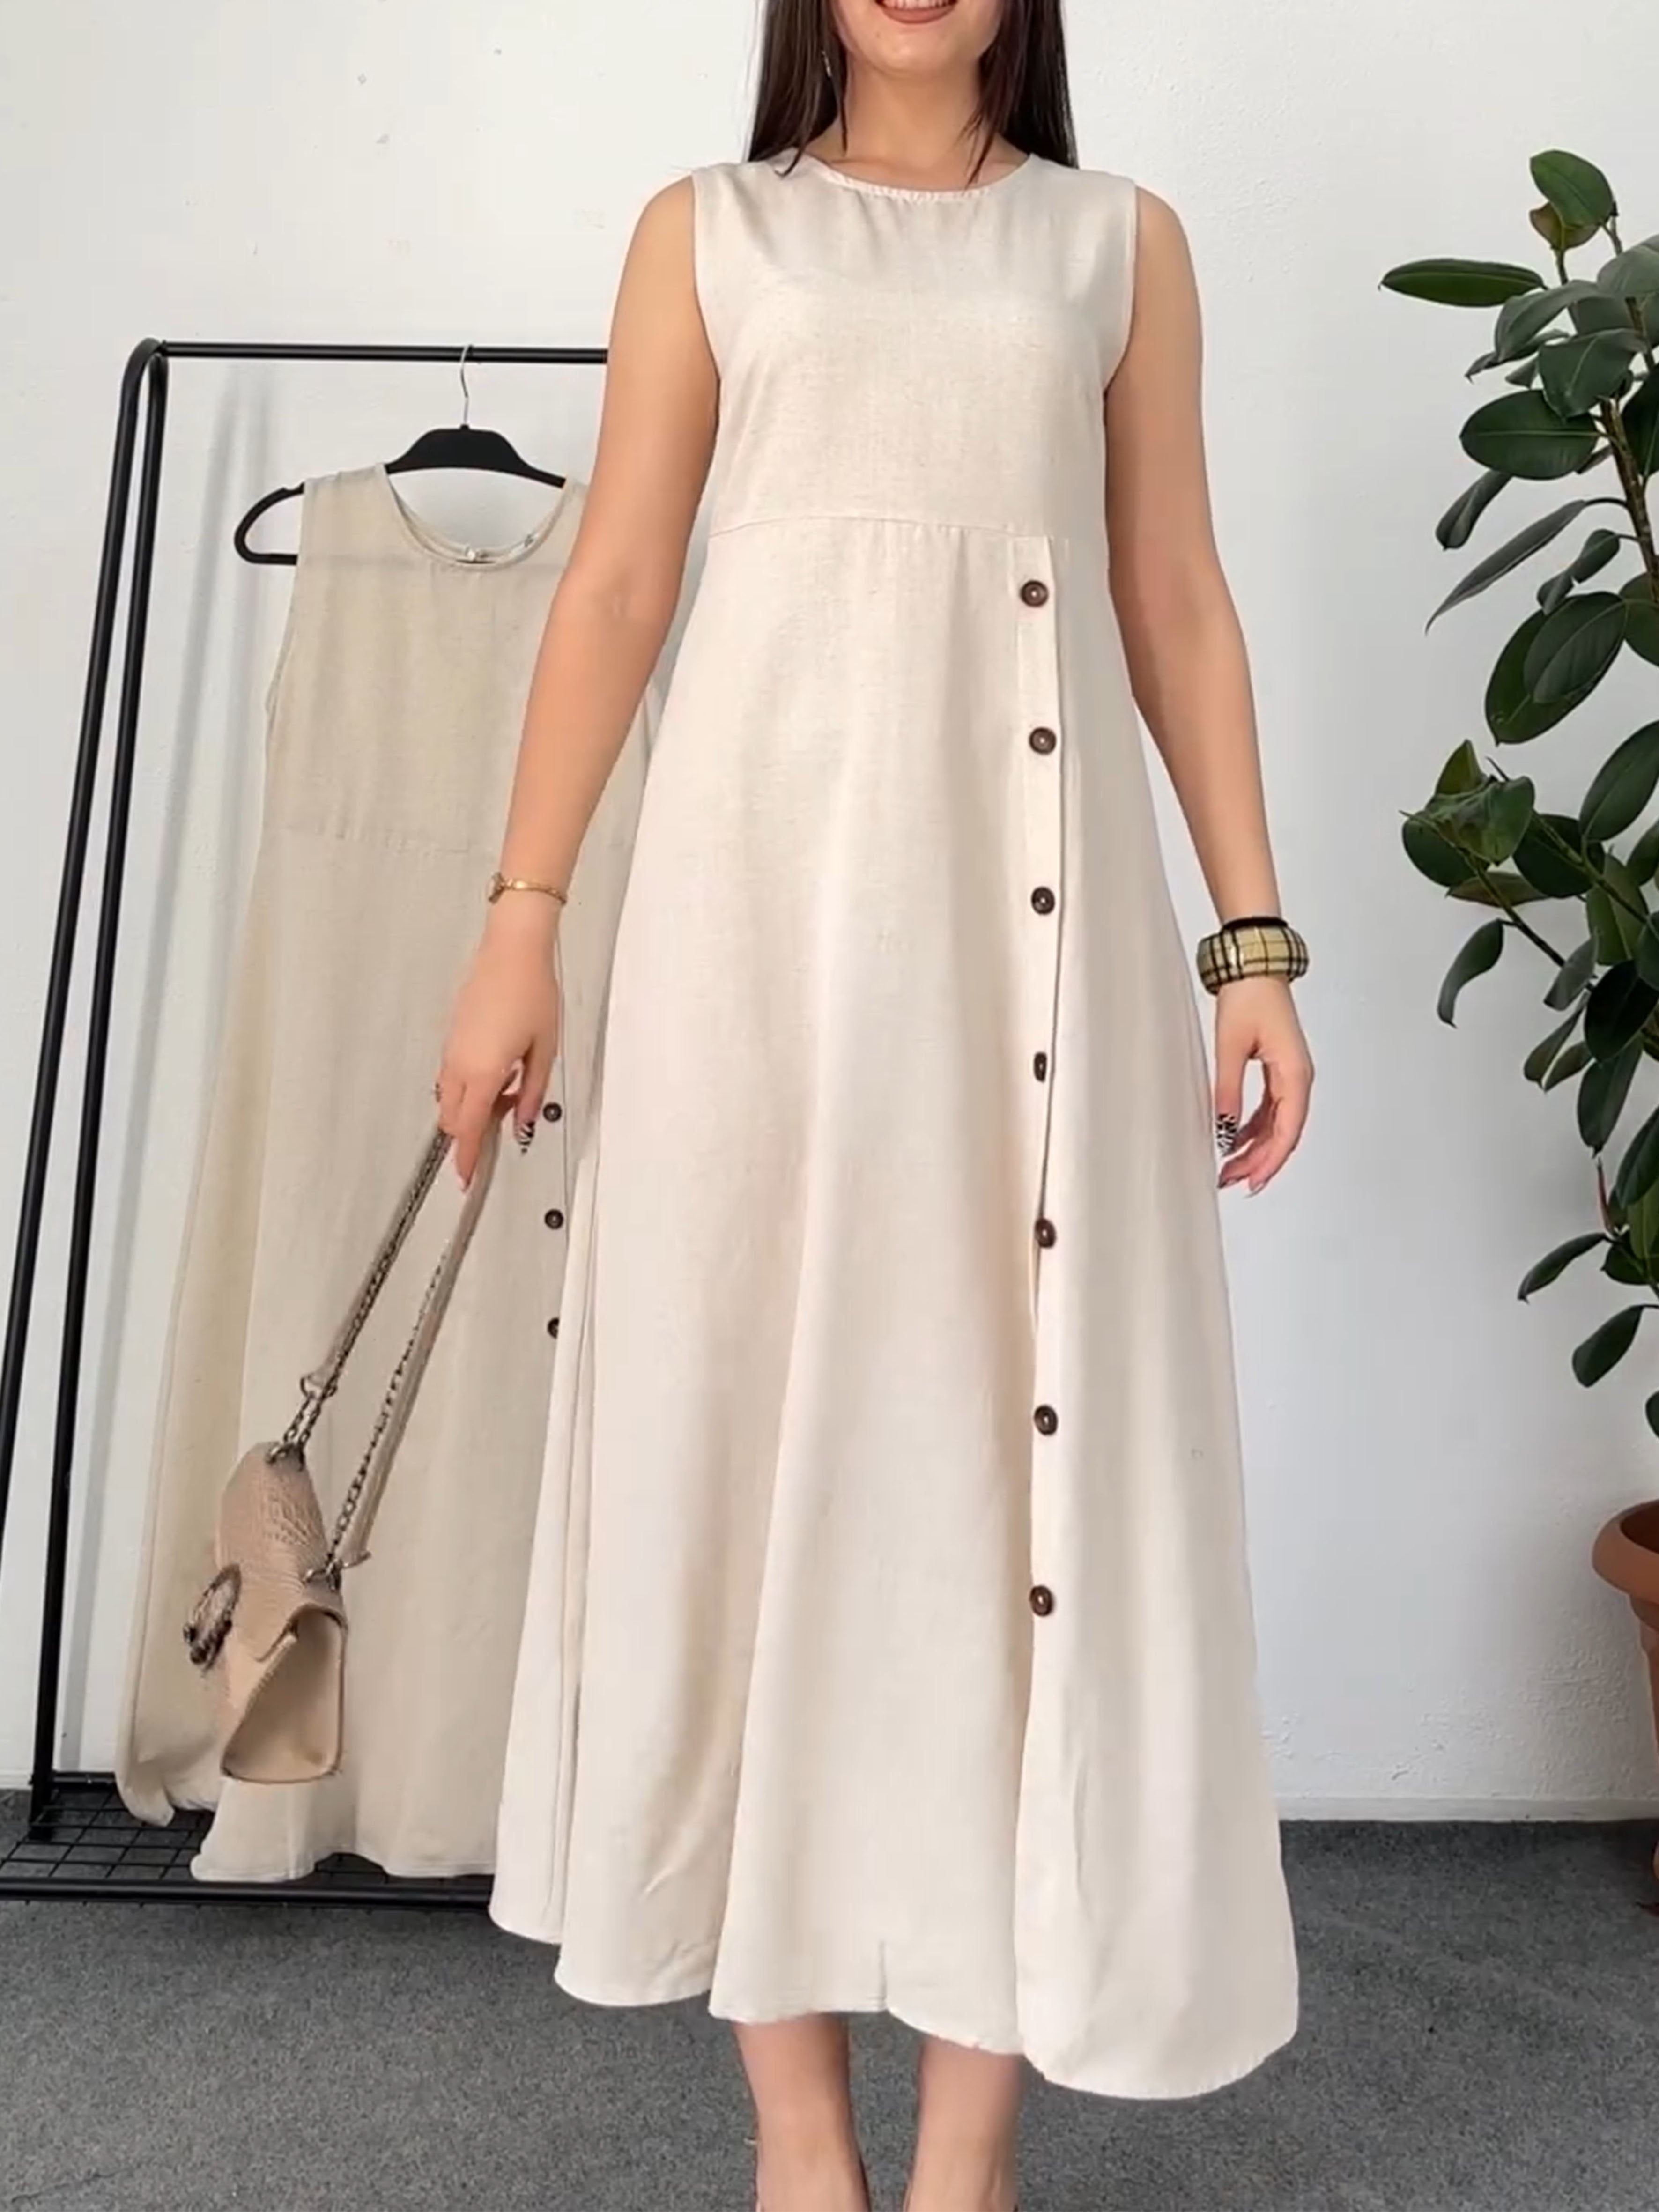 Irregular Buttoned Sleeveless Cotton and Linen Dress